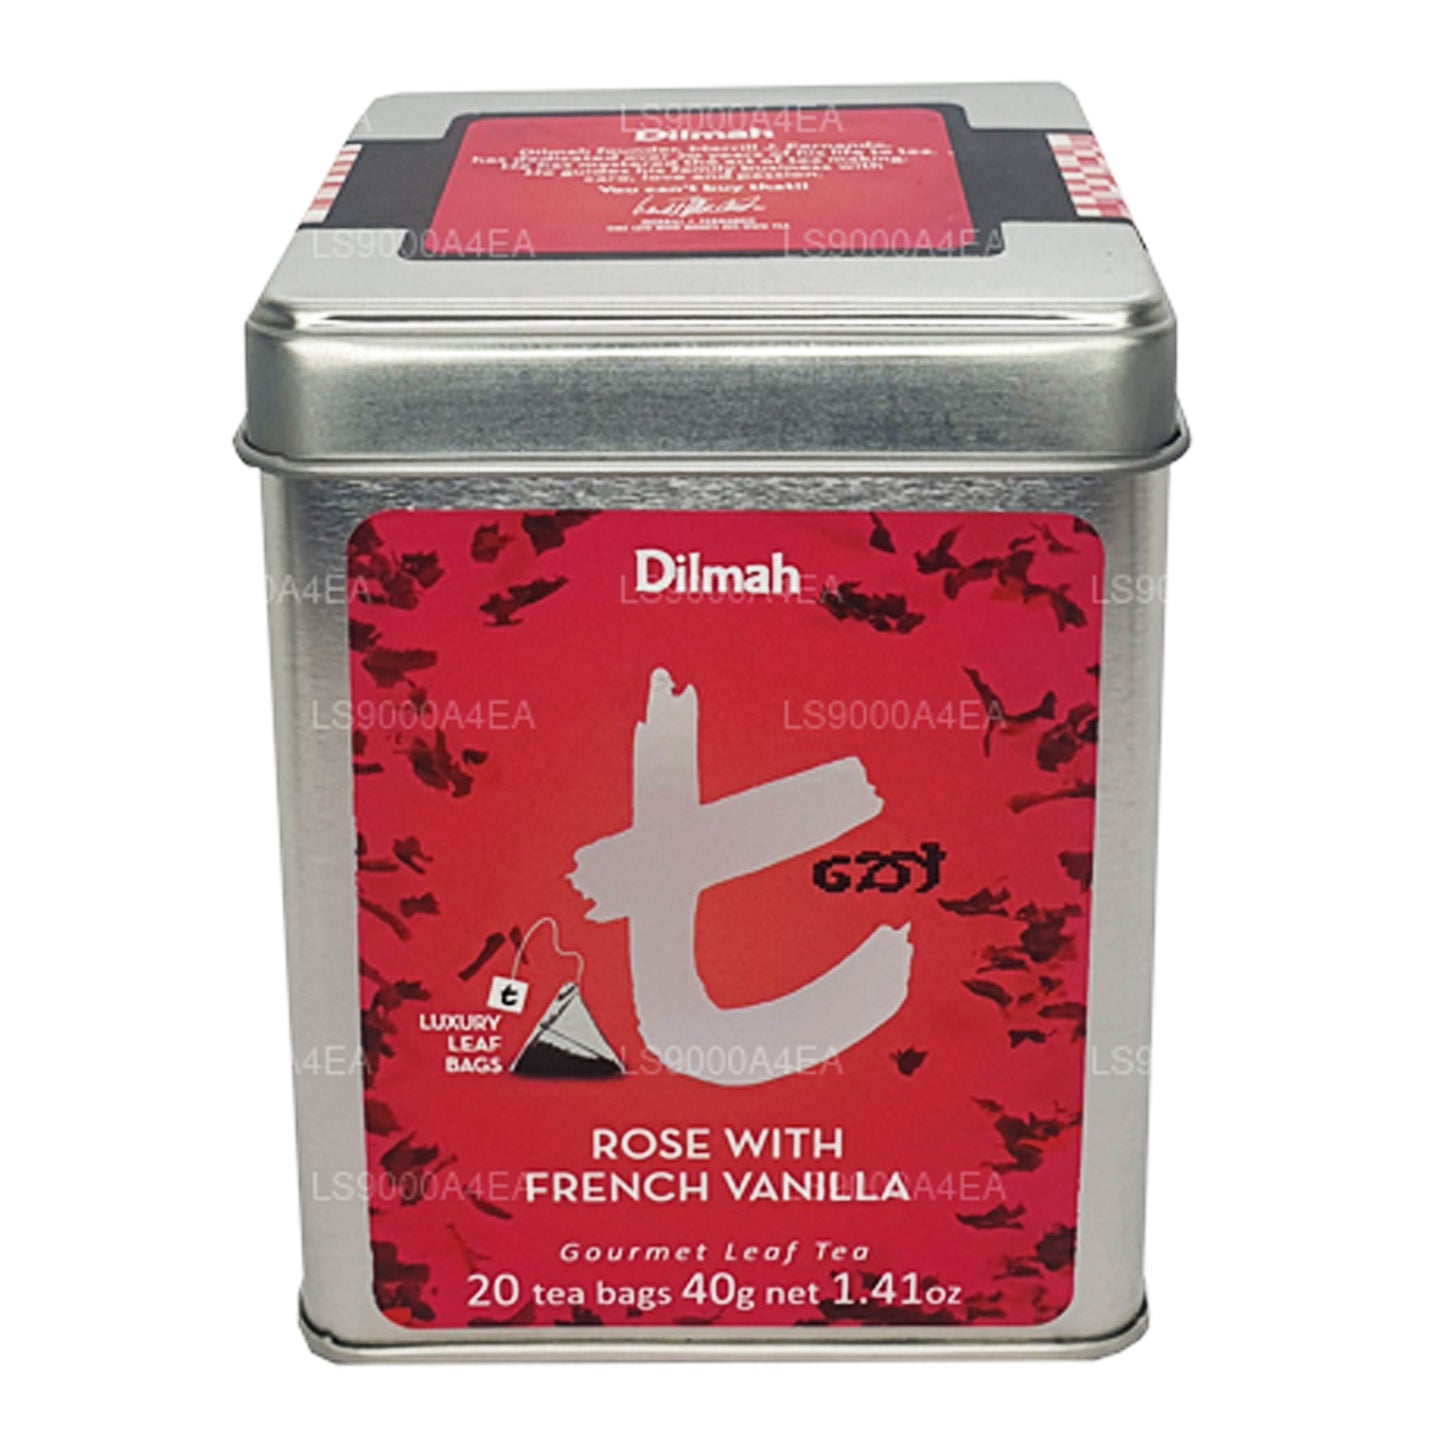 شاي ديلما تي سيريز برائحة الورد والفانيلا الفرنسية، 20 كيس شاي بأوراق الشاي (40 جرام)